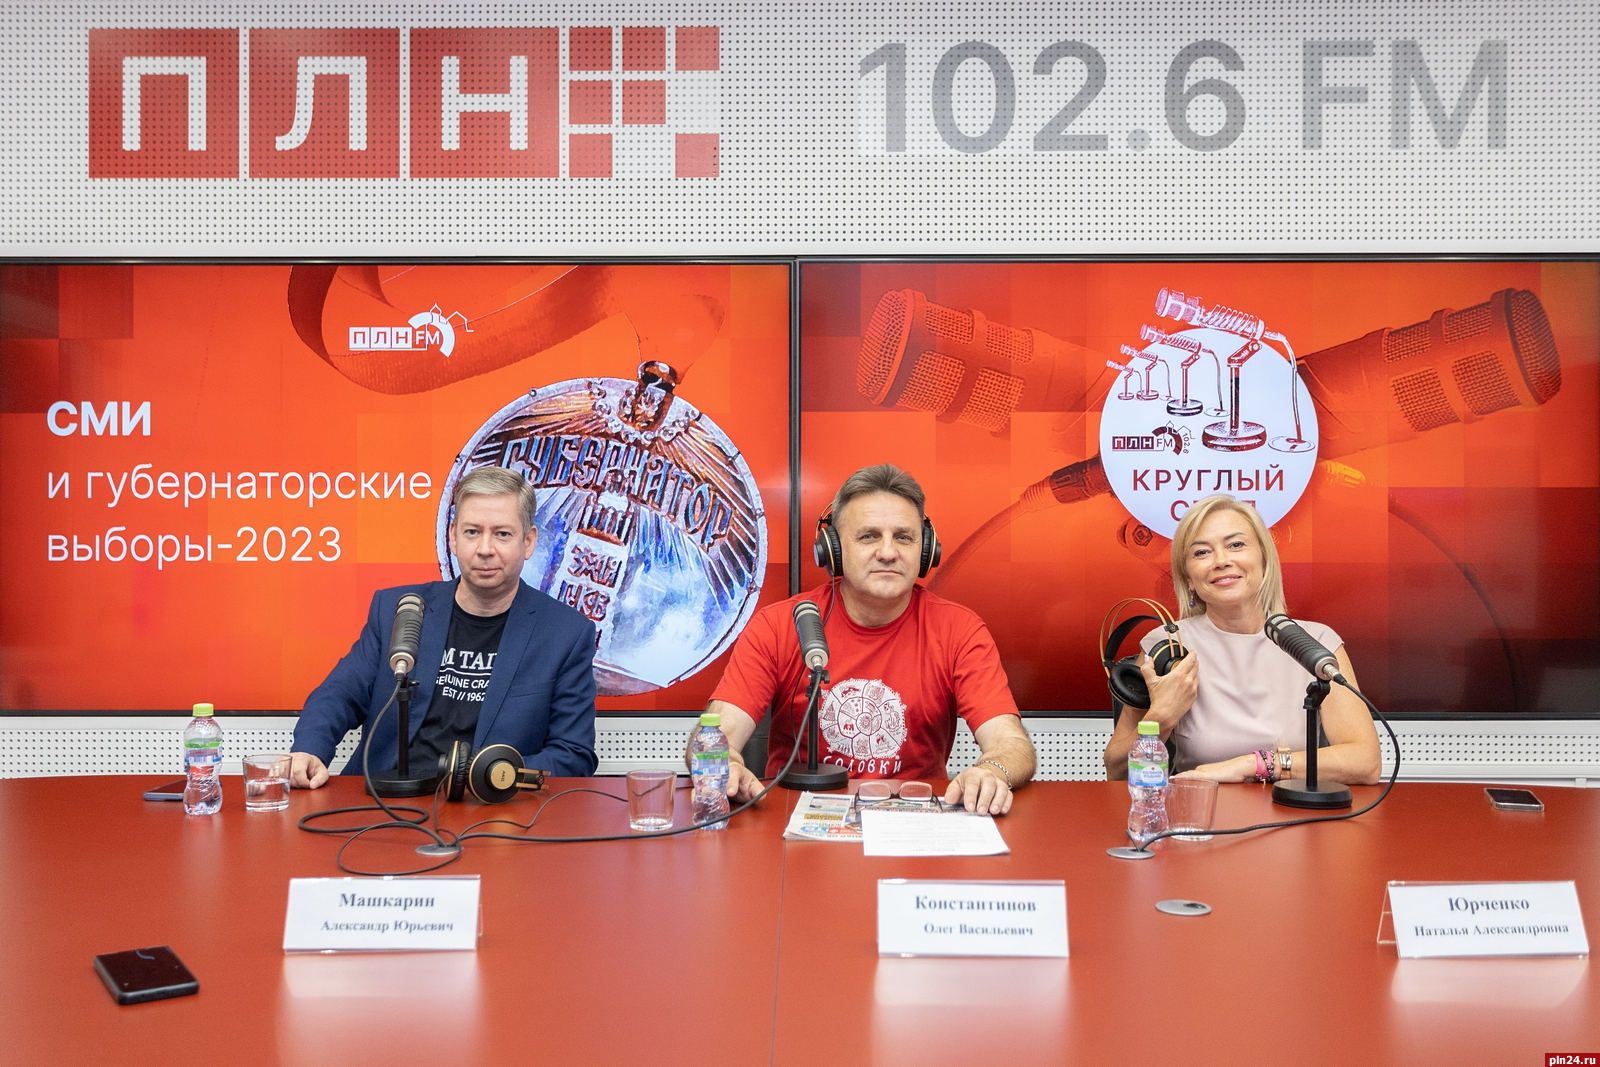 Журналисты или пропагандисты: участники круглого стола в эфире «ПЛН FM» поспорили о роли СМИ на выборах